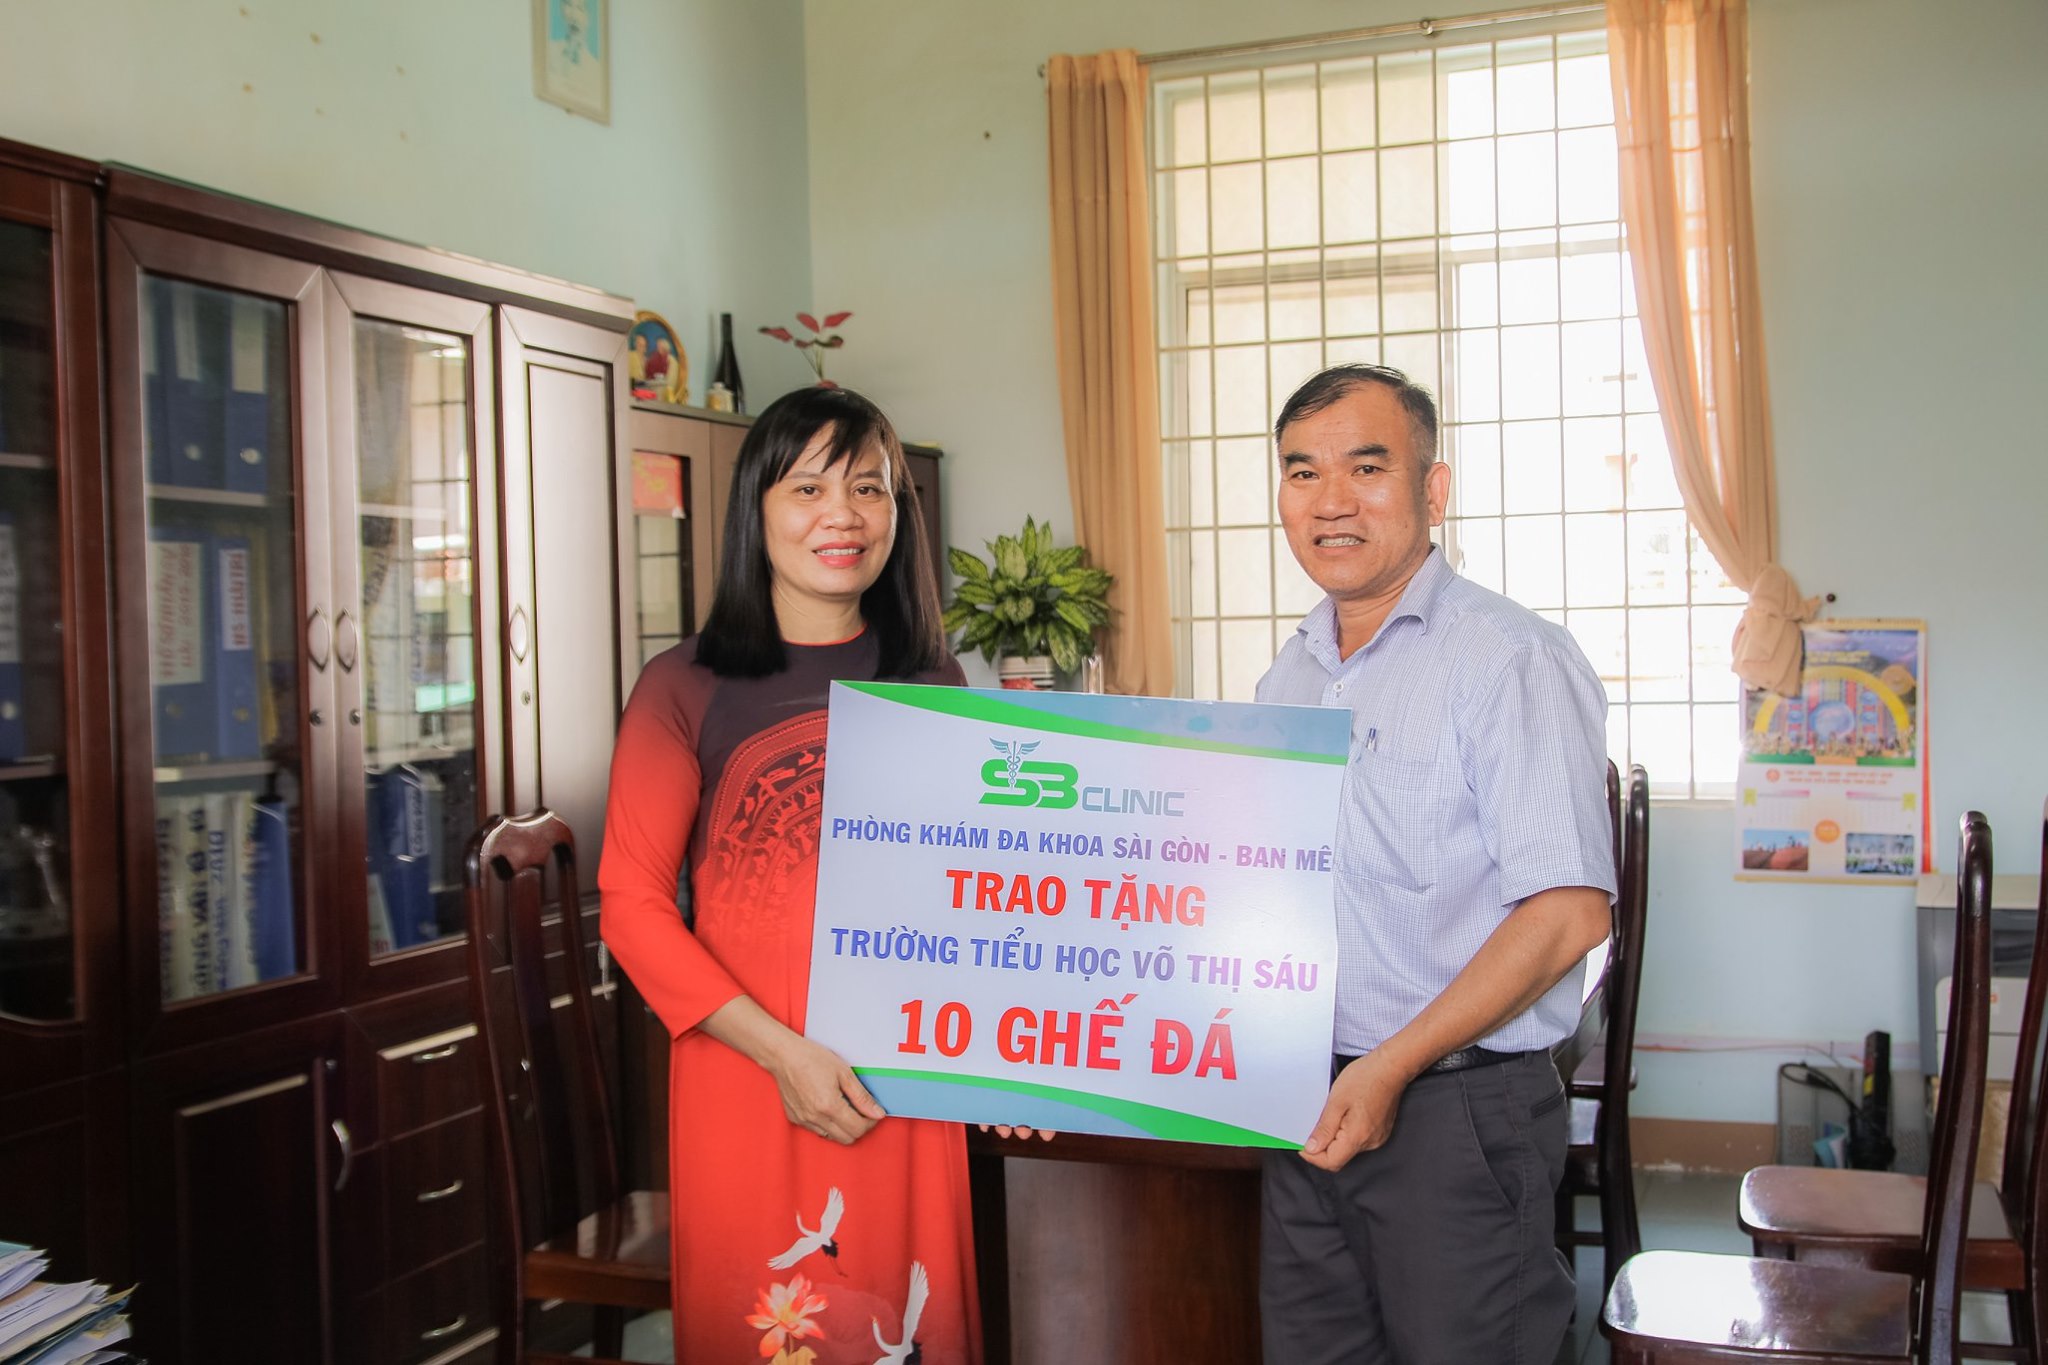 Sài Gòn - Ban Mê trao tặng 10 ghế đá cho trường Tiểu học Võ Thị Sáu